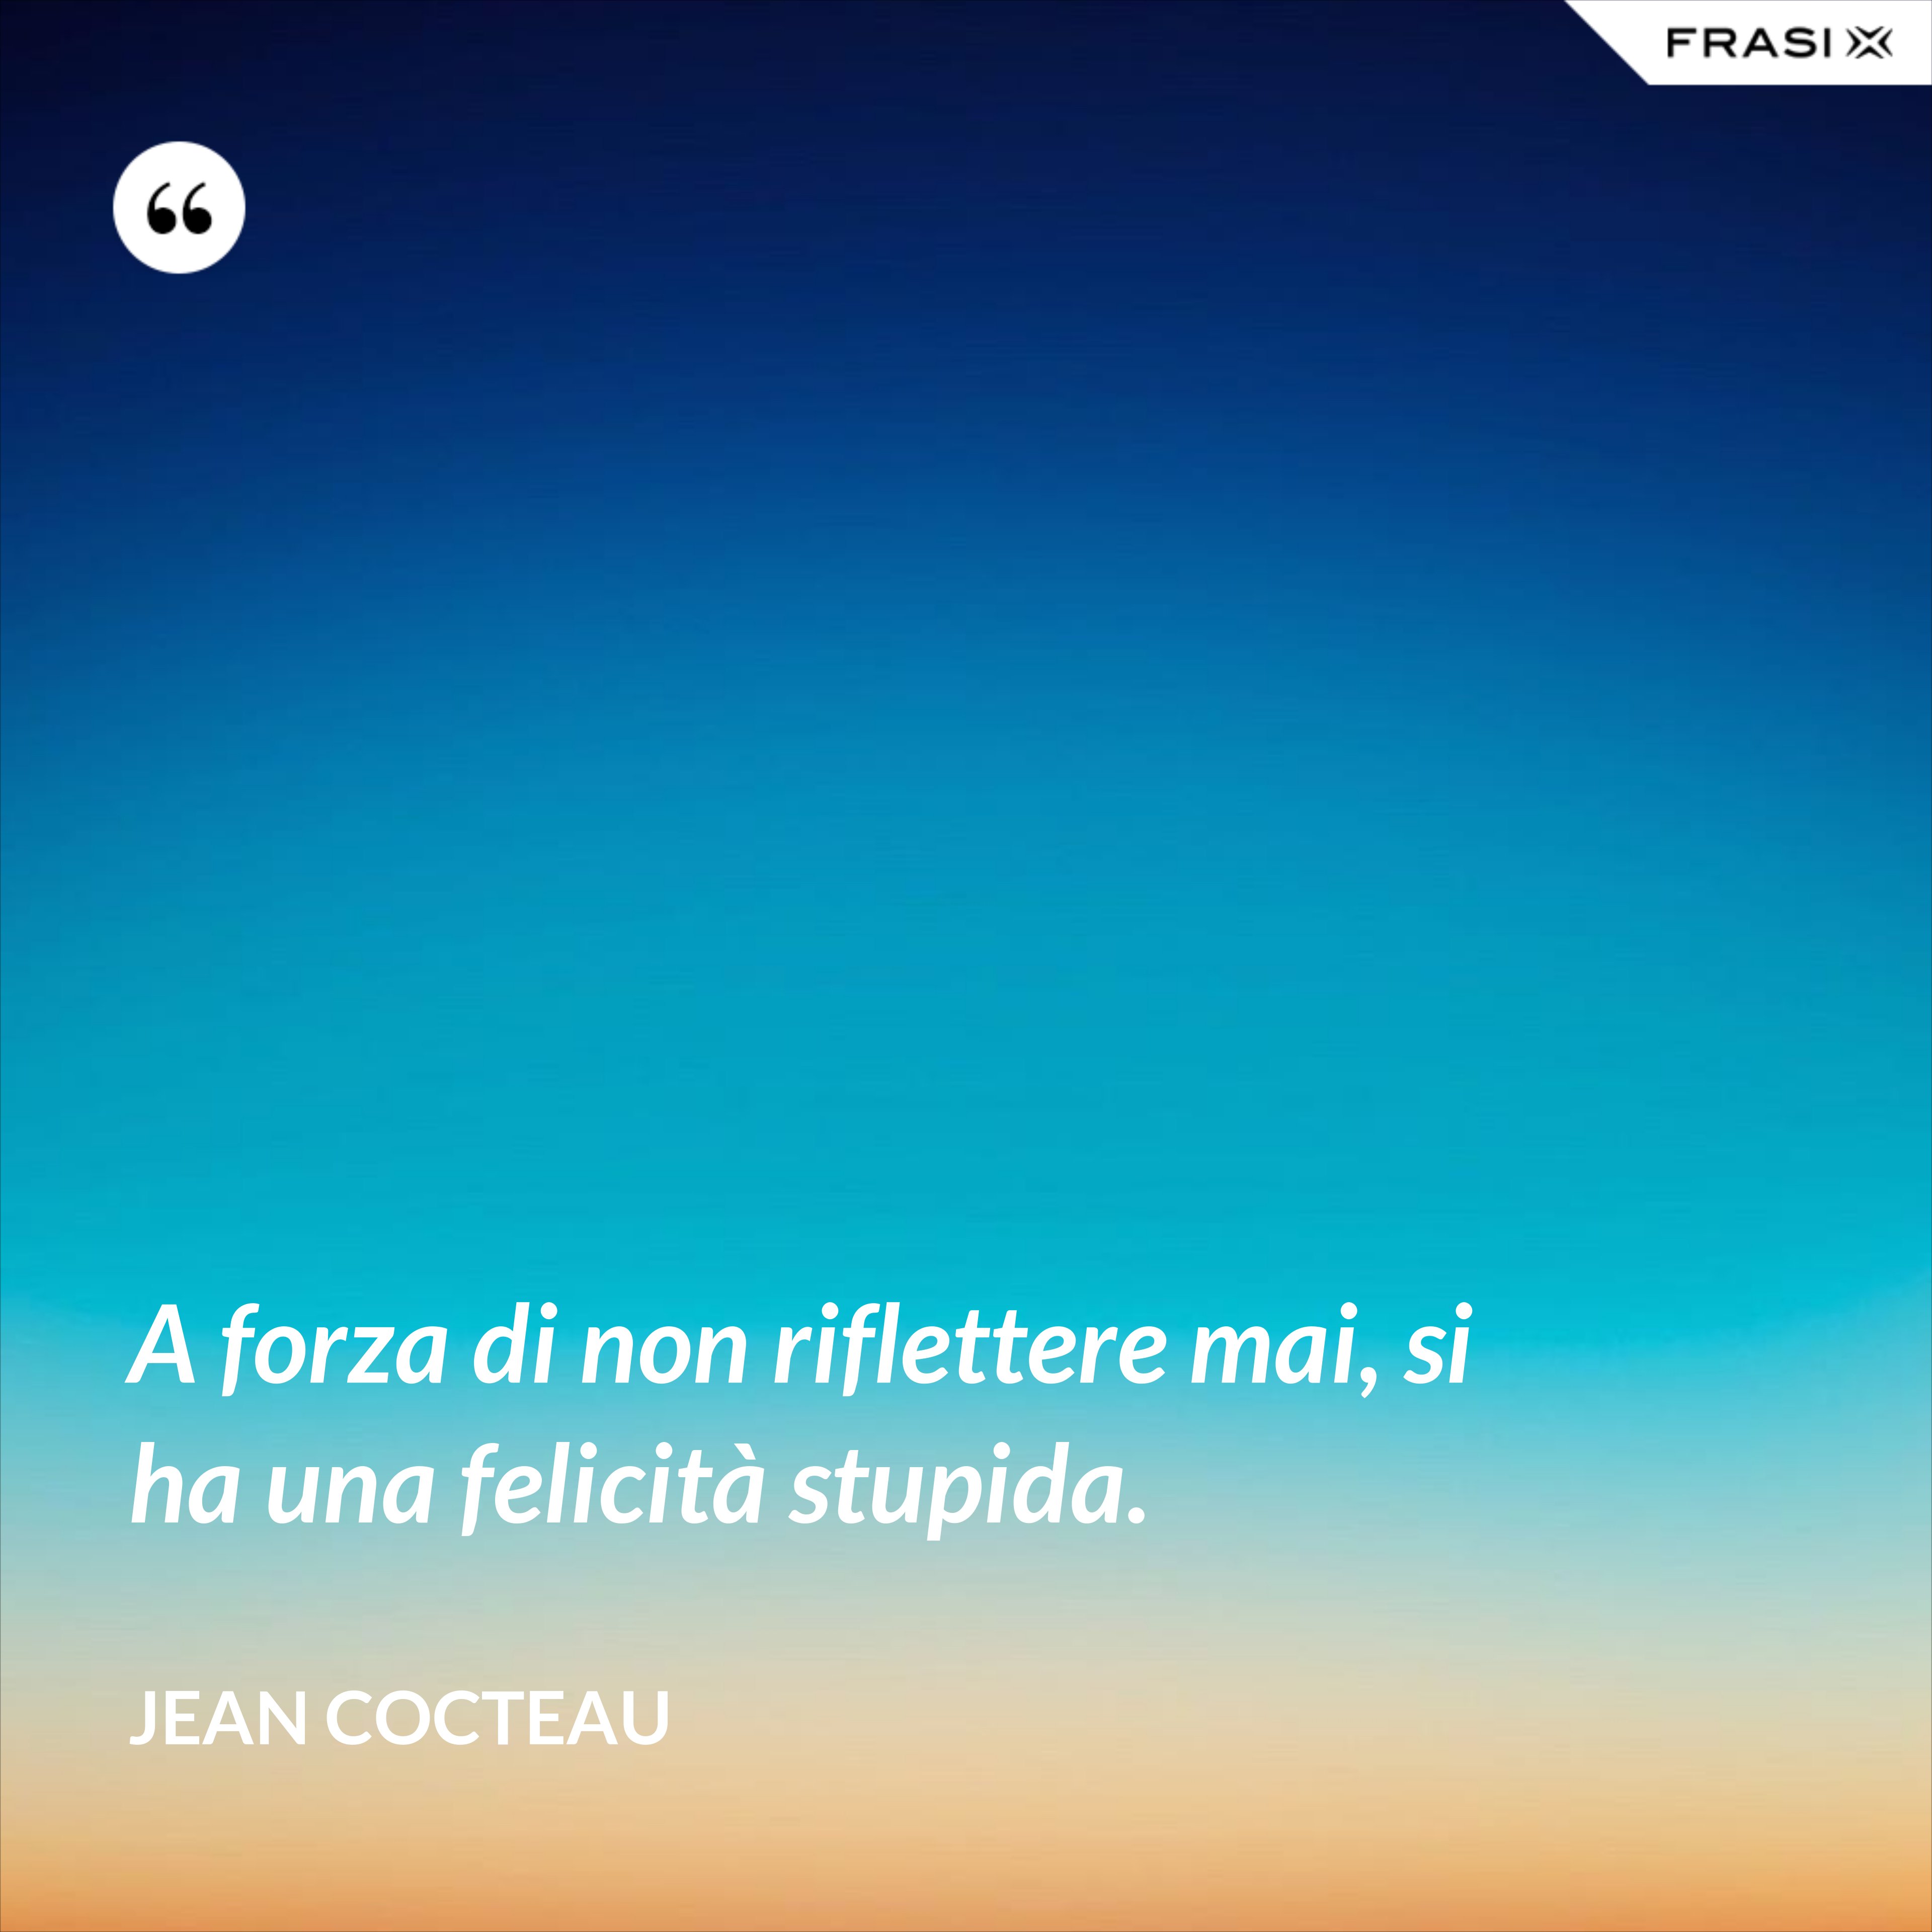 A forza di non riflettere mai, si ha una felicità stupida. - Jean Cocteau